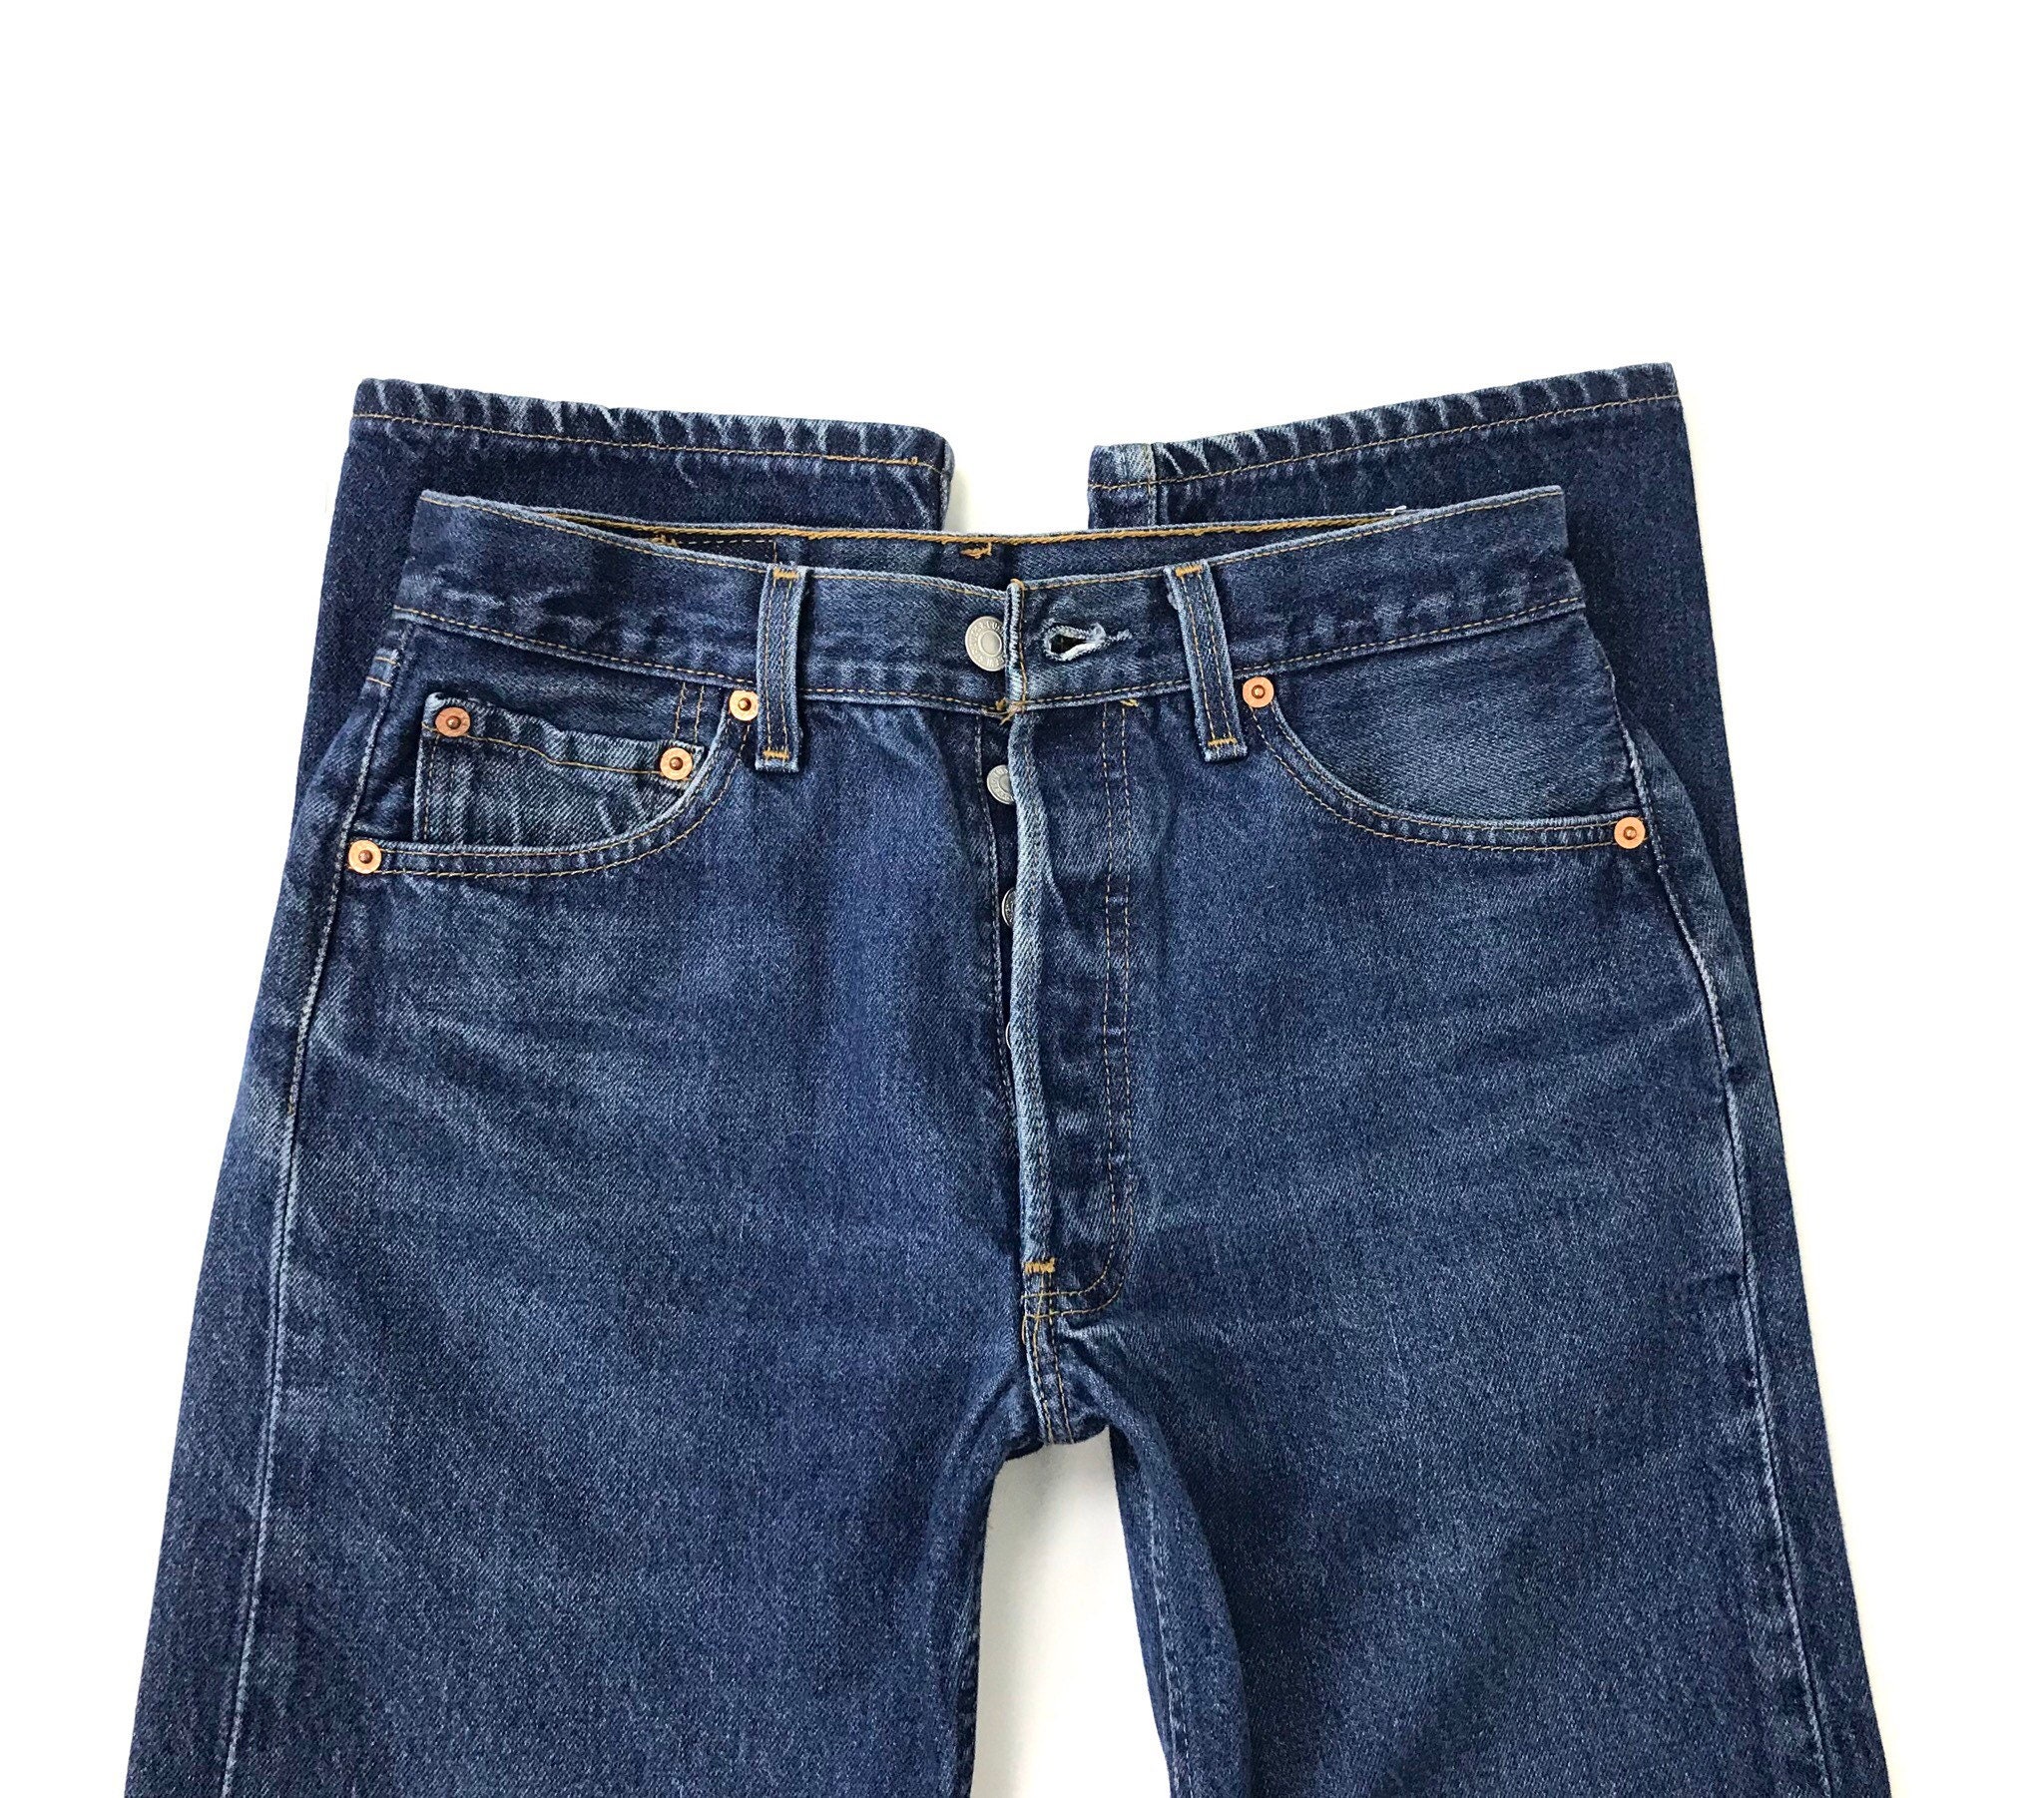 Levi's 501xx Vintage Jeans / Size 27